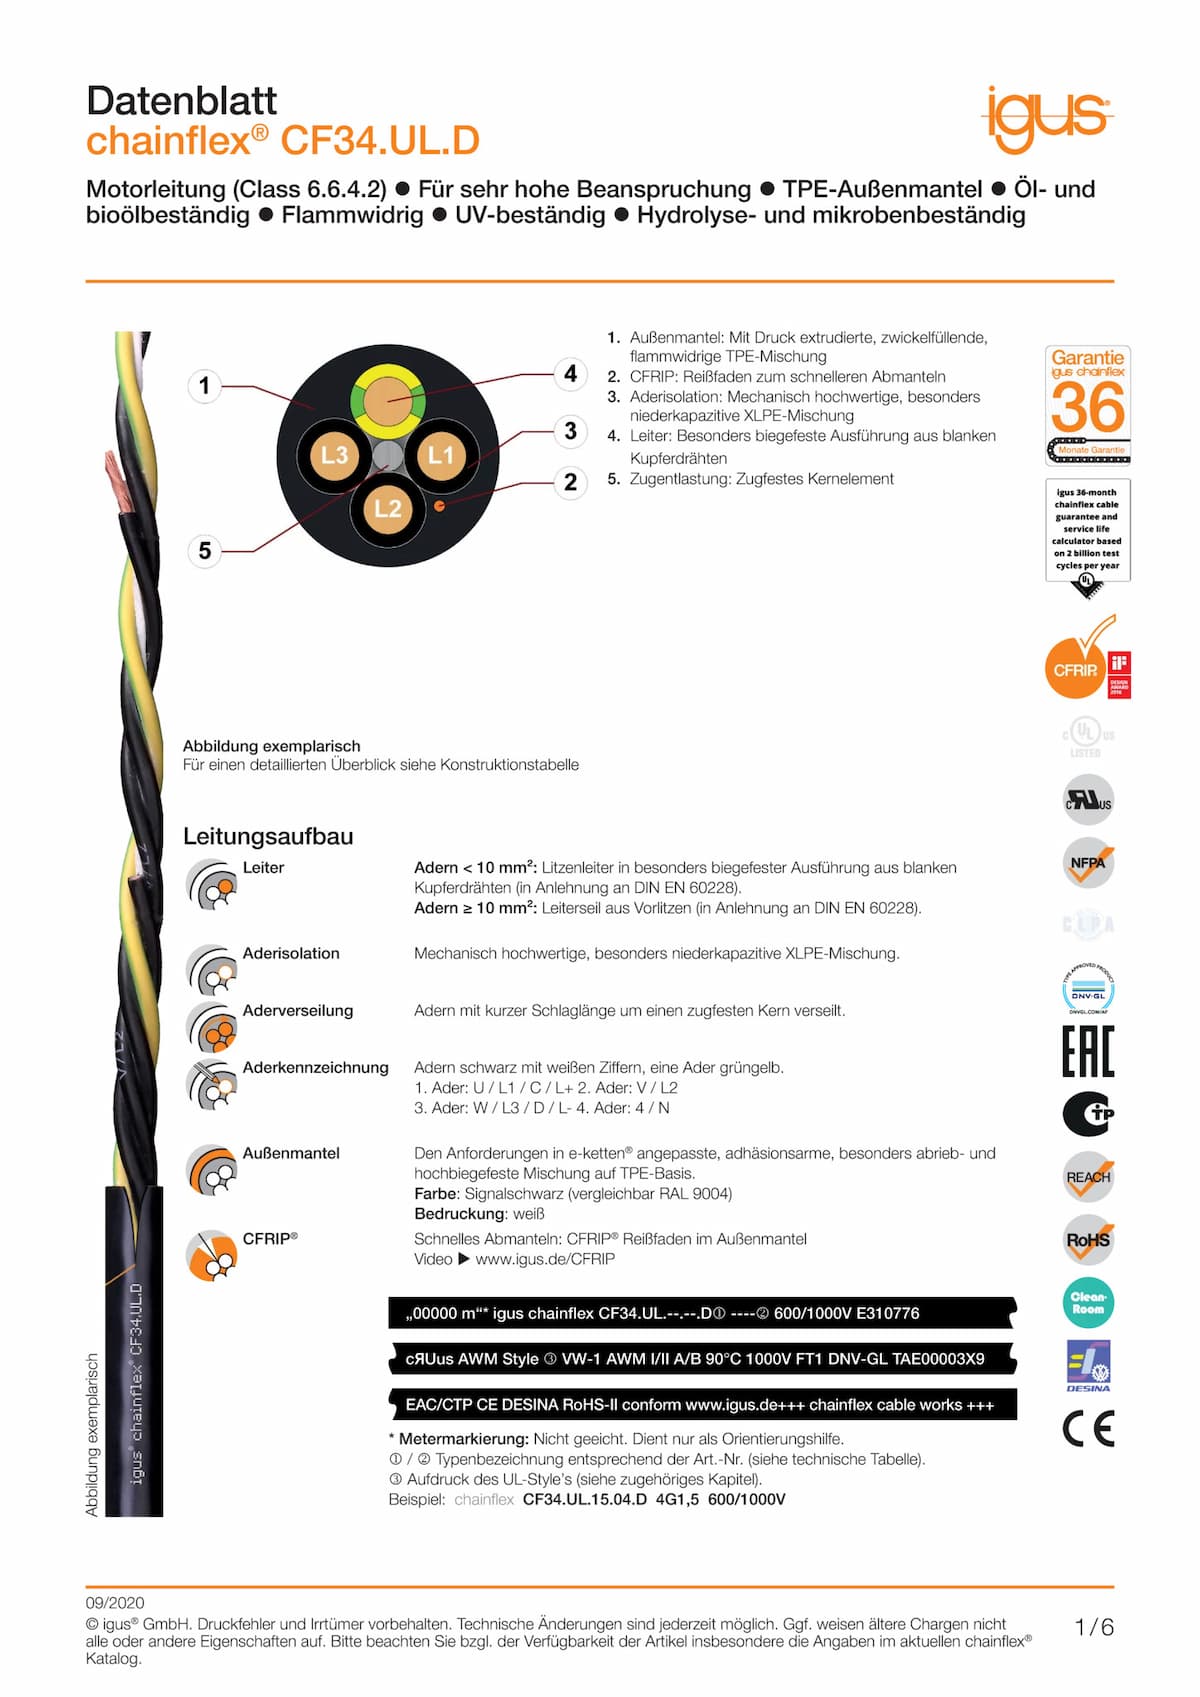 Technisches Datenblatt chainflex® Motorleitung CF34.UL.D